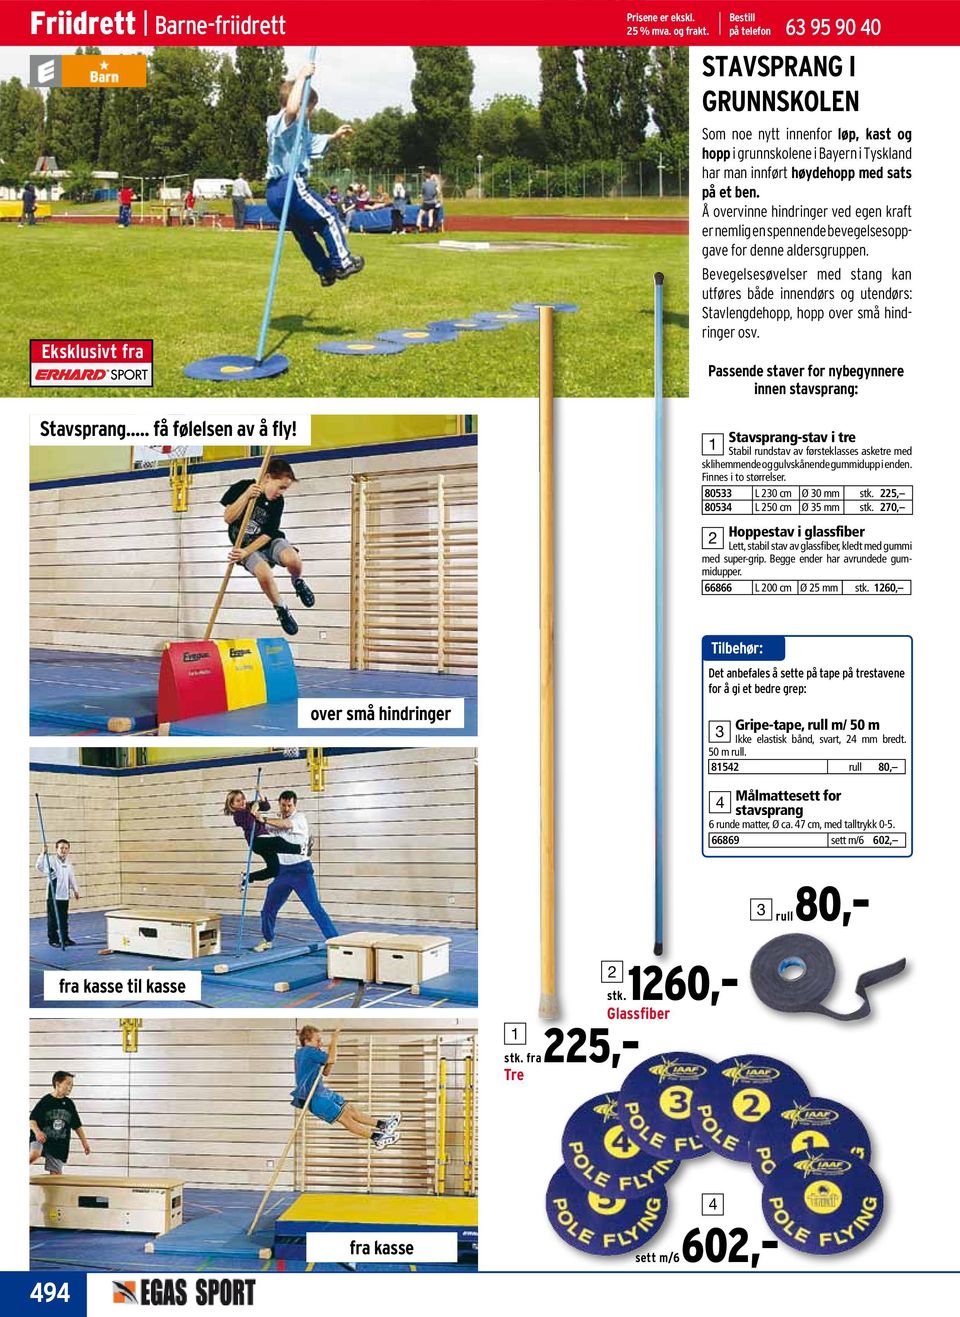 FRIIDRETT. Barne-friidrett Løping Hopp Støt, kast Starting, måling  Stoppeklokke - PDF Free Download